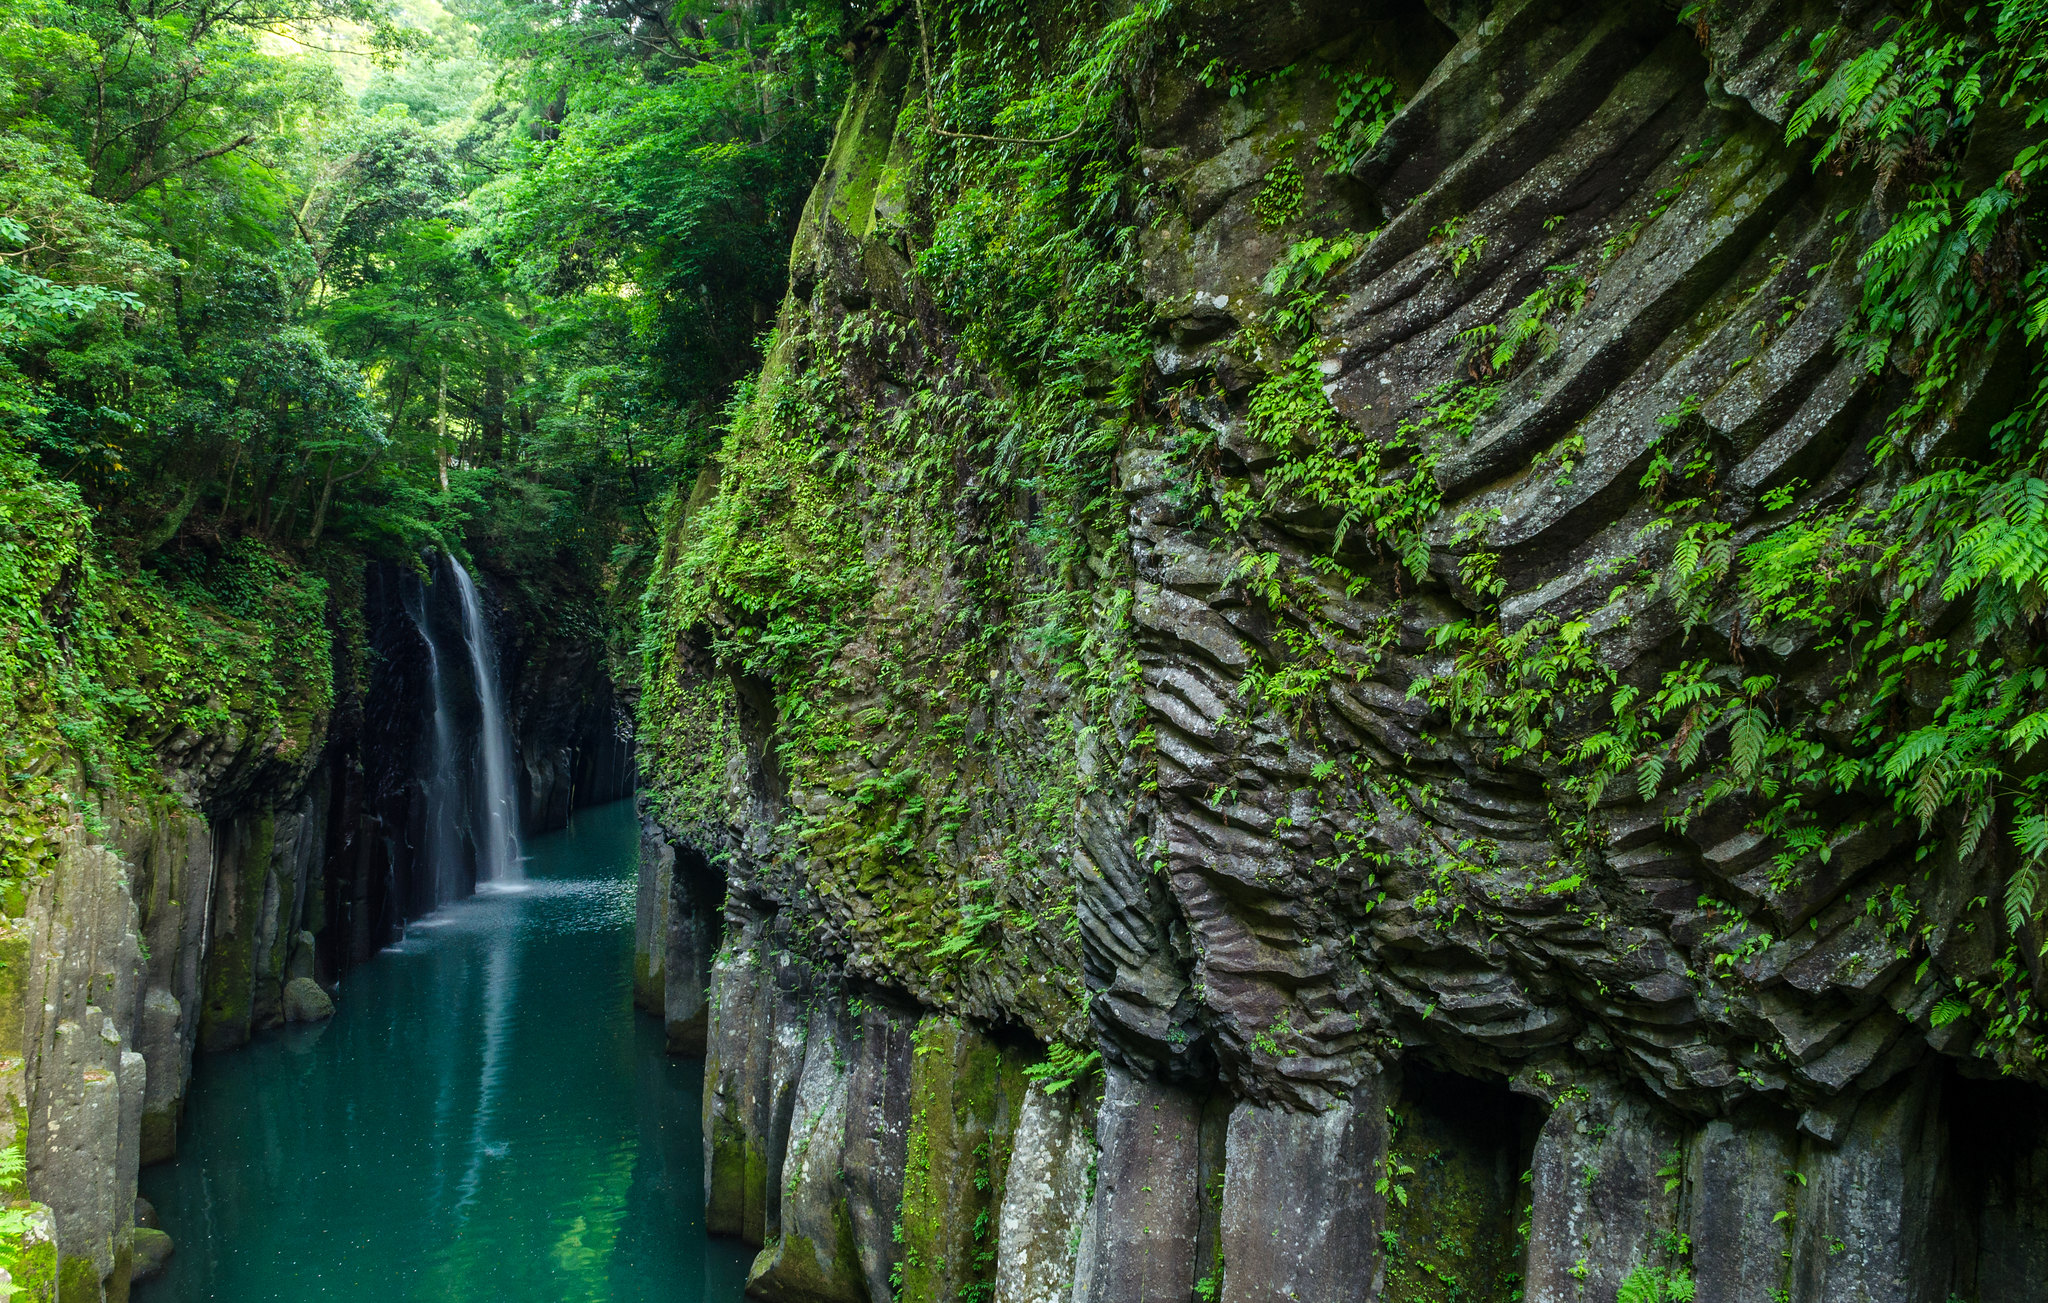 Les gorges de Takachiho ont été taillées dans des falaises de basaltiques par le fleuve Gokase sur l'île de Kyūshū, au Japon. © Einheit 00, Flickr, CC By 2.0